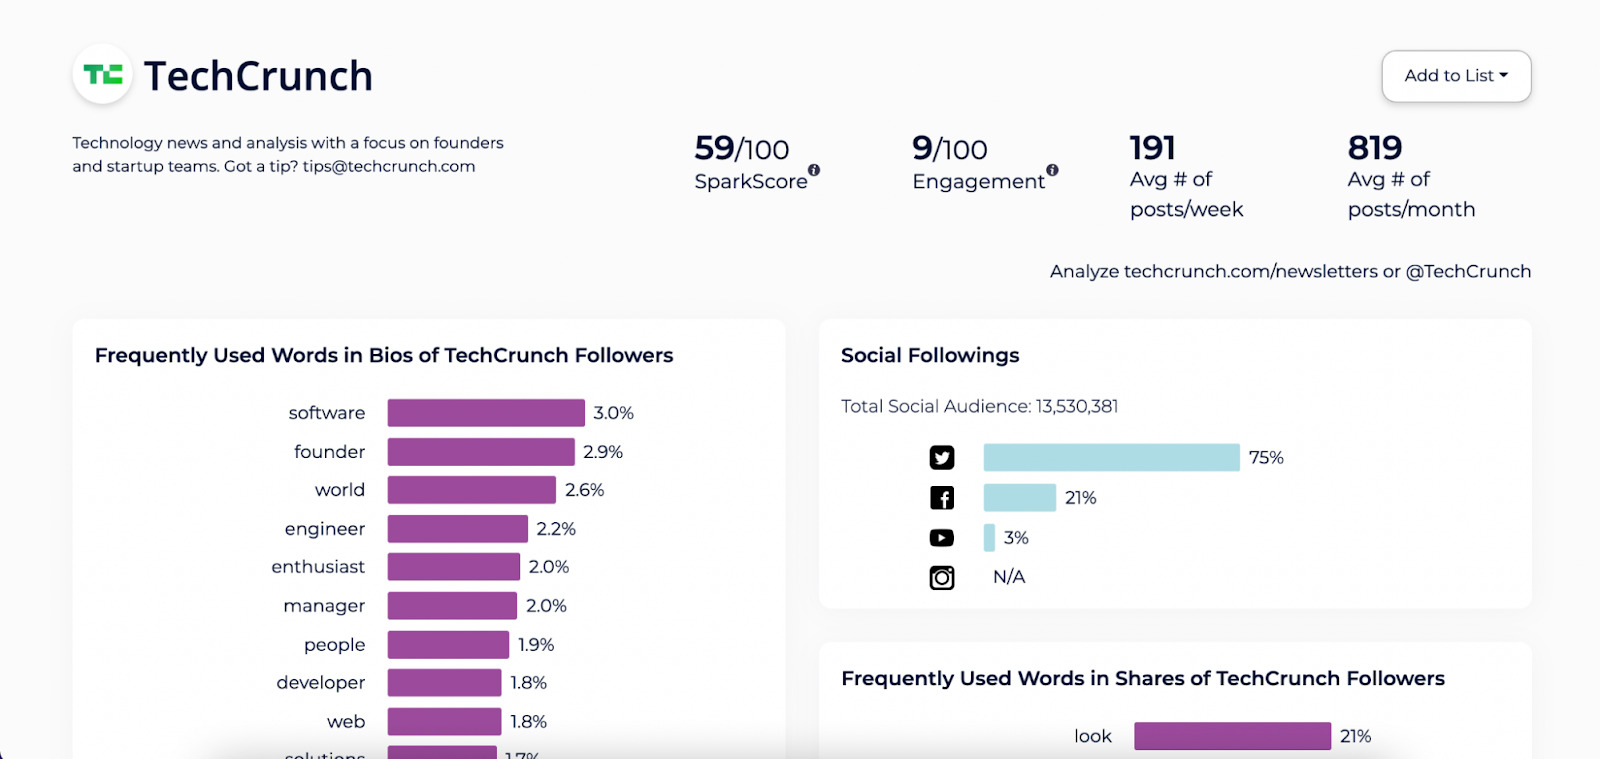  Rapport sur TechCrunch. Données clés sur le dessus. En dessous, un graphique montre les followers sur les réseaux sociaux, etc.